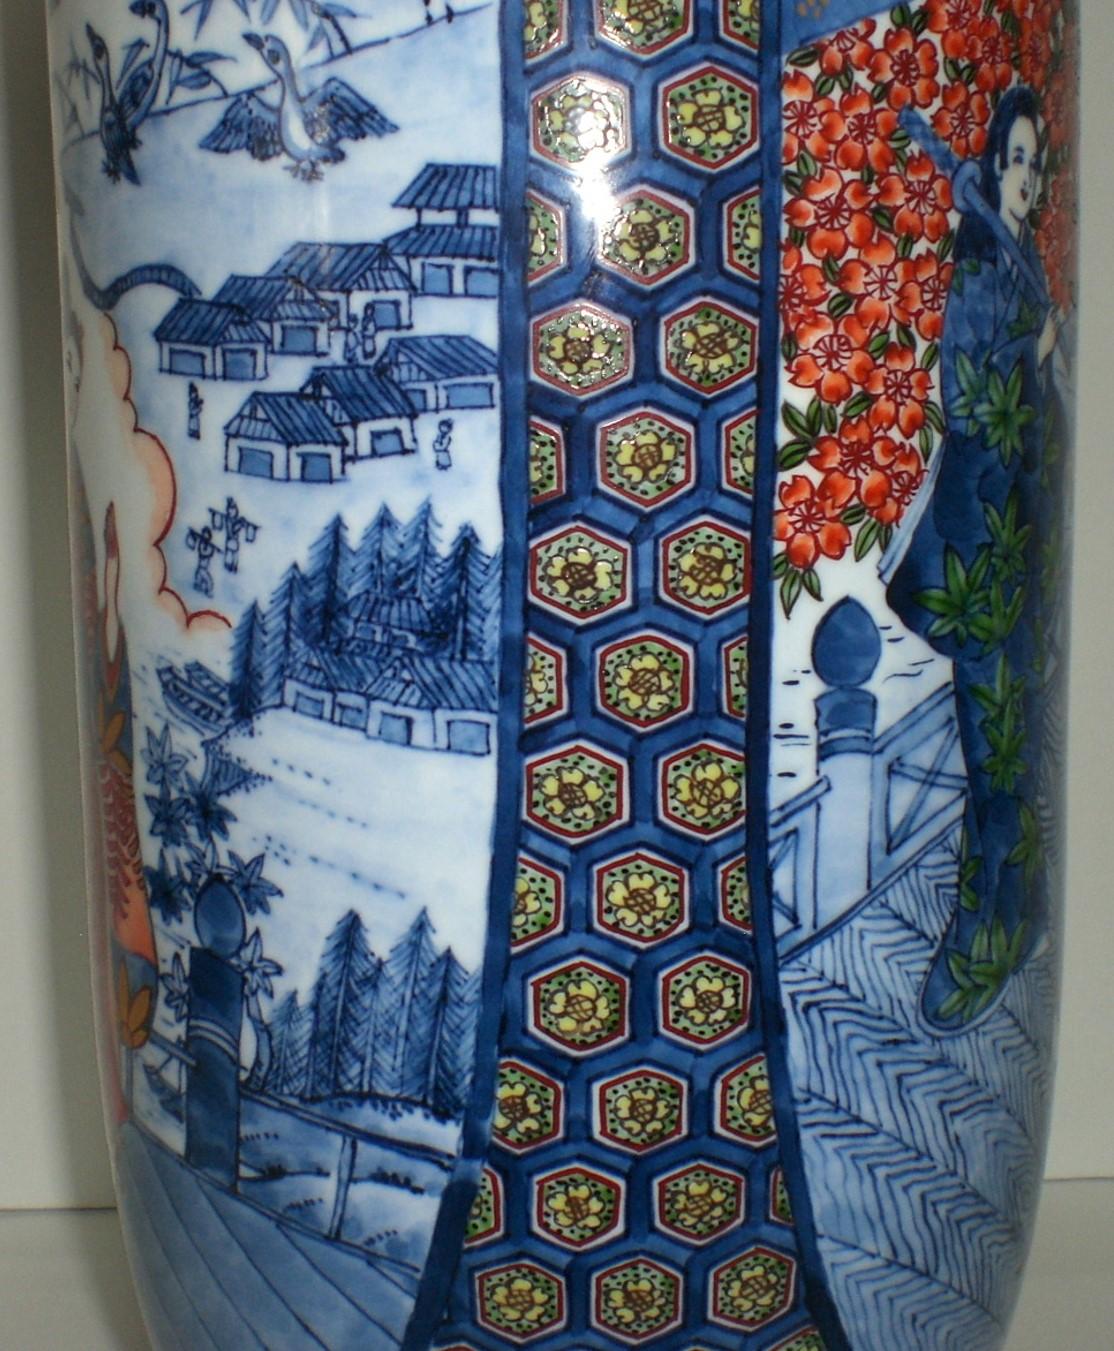 Außergewöhnliche sehr große japanische zeitgenössische dekorative Porzellanvase, aufwendig von Hand bemalt auf einem hohen, atemberaubend geformten Porzellankörper in Rot, Grün und Blau, ein signiertes Meisterwerk von hochgelobten preisgekrönten